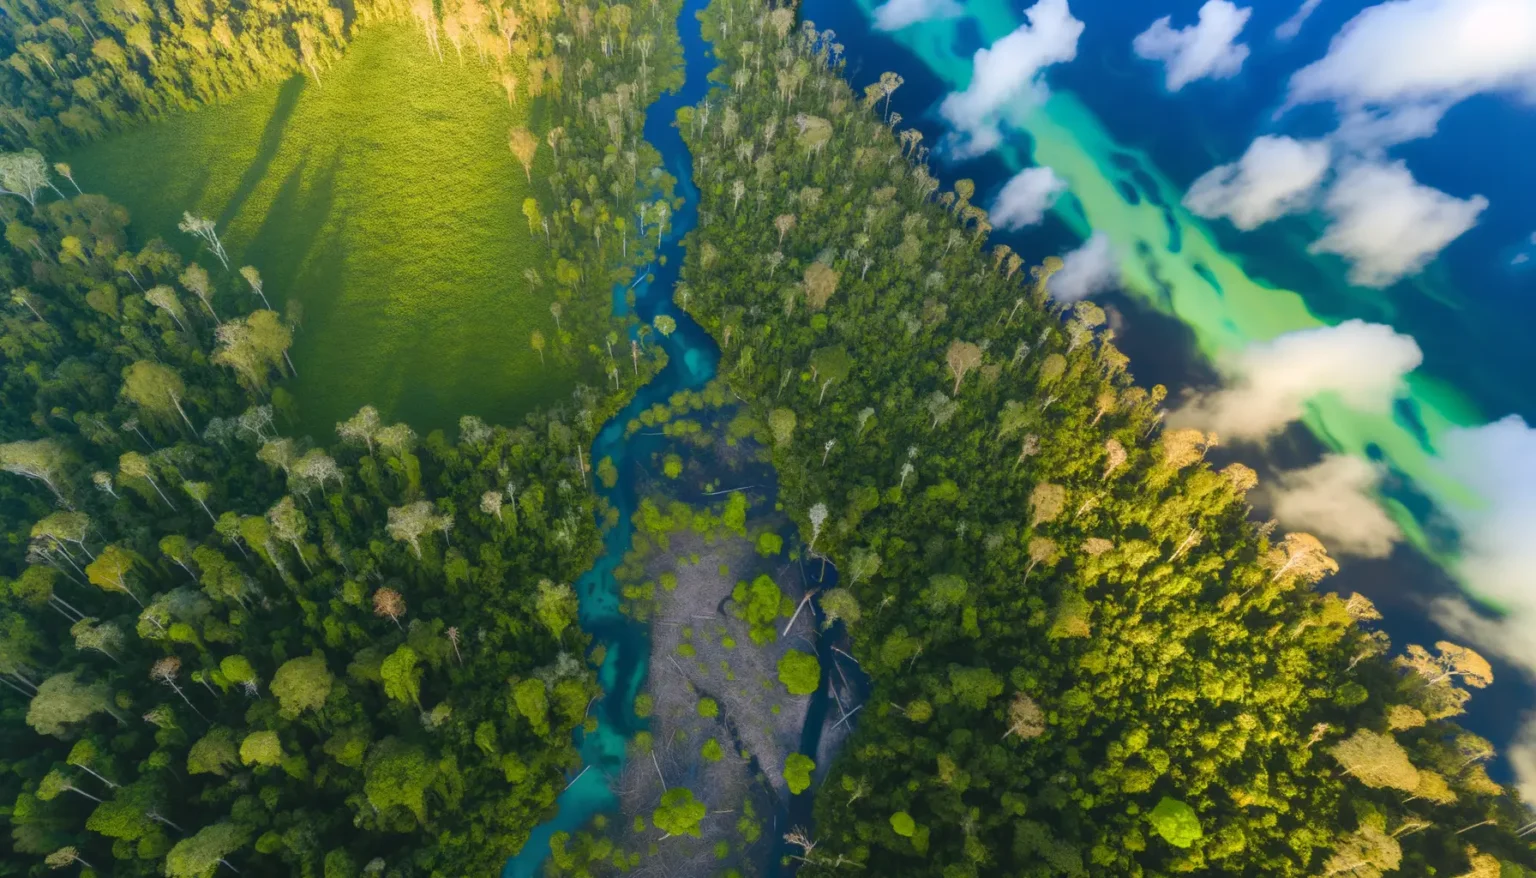 Luftaufnahme eines gewundenen Flusses mit klarem türkisfarbenem Wasser, der sich durch eine dichte, grüne Waldlandschaft schlängelt, begleitet von Wolken, die sich im blendend blauen Wasser spiegeln. Die Sonne beleuchtet die Szene und erzeugt ein lebendiges Spektrum von Grüntönen auf der Vegetation und ein dynamisches Spiel von Licht und Schatten auf dem Wasser und dem Wald.